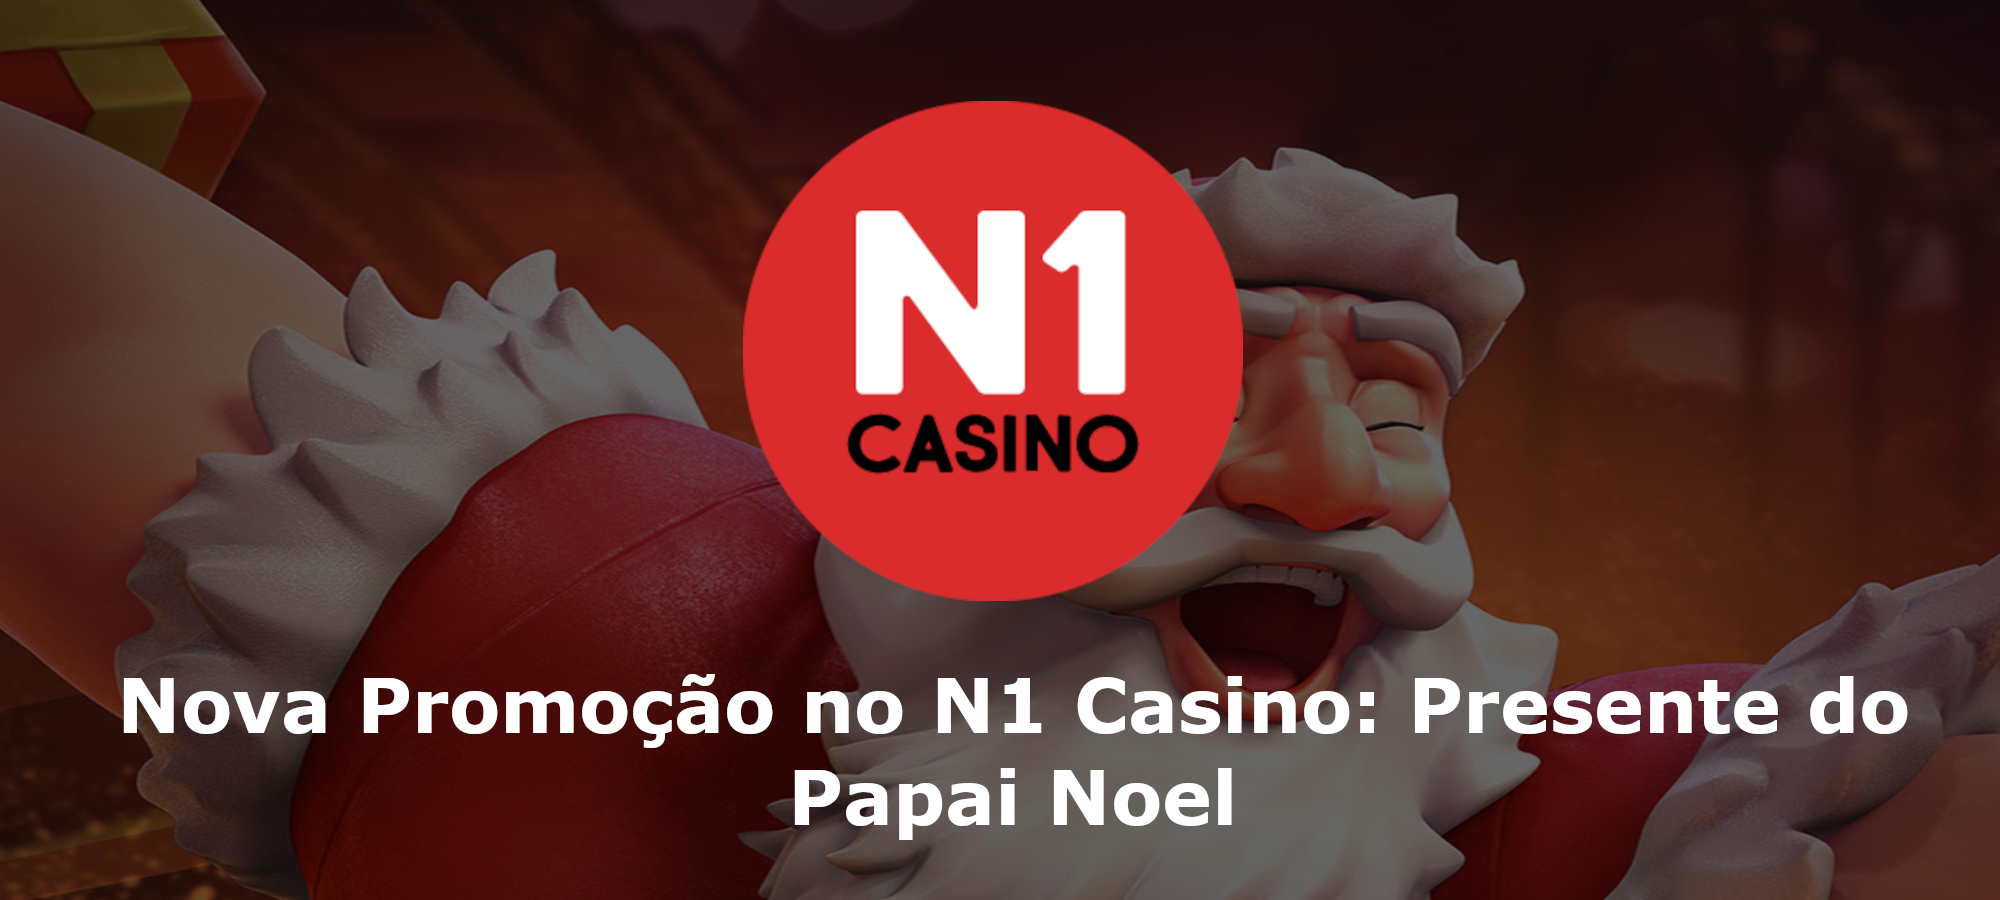 Nova Promoção no N1 Casino: Presente do Papai Noel